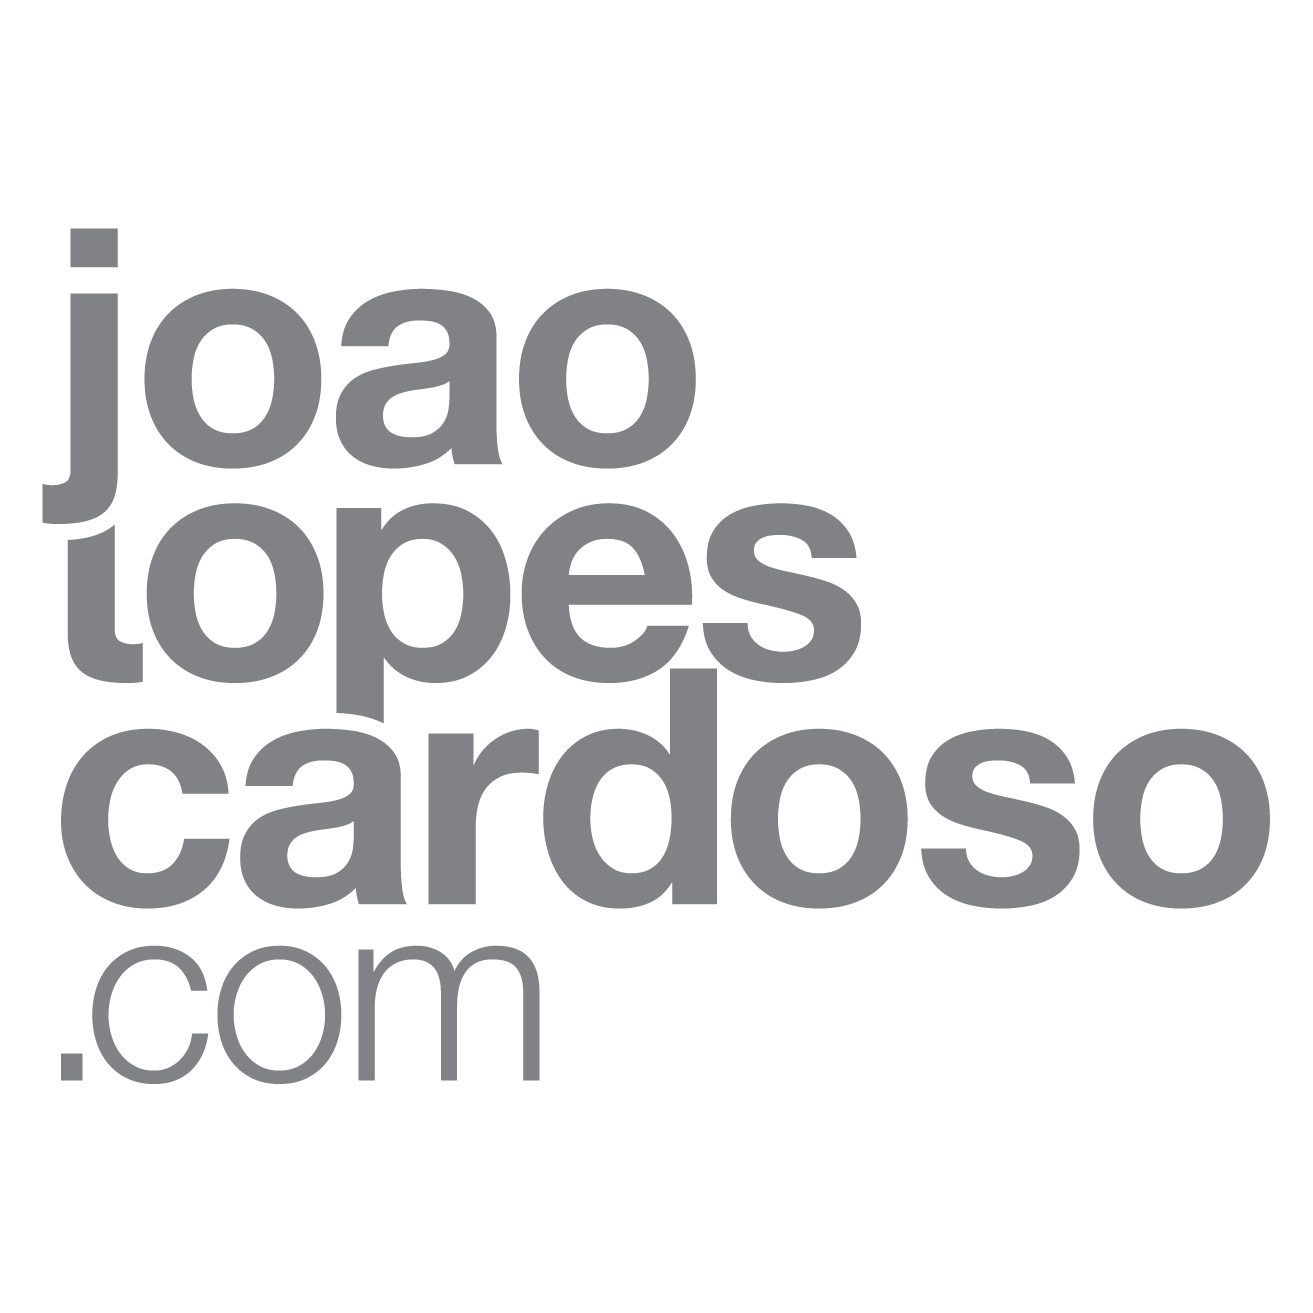 João Lopes Cardoso